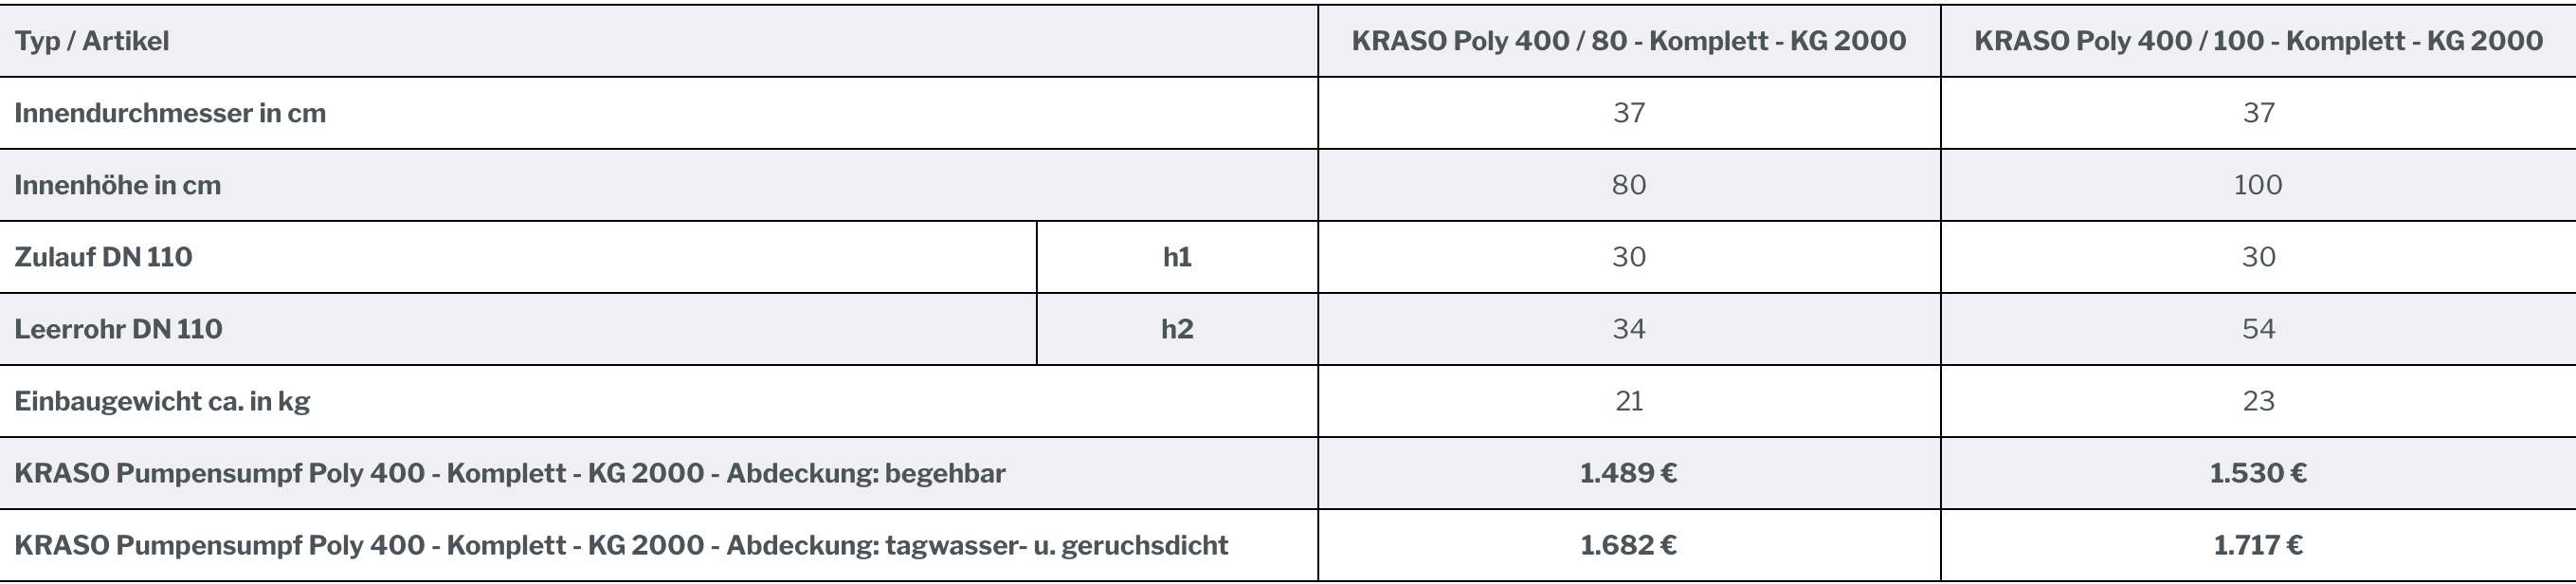 KRASO Pumpensumpf Poly 400 - Komplett - KG 2000